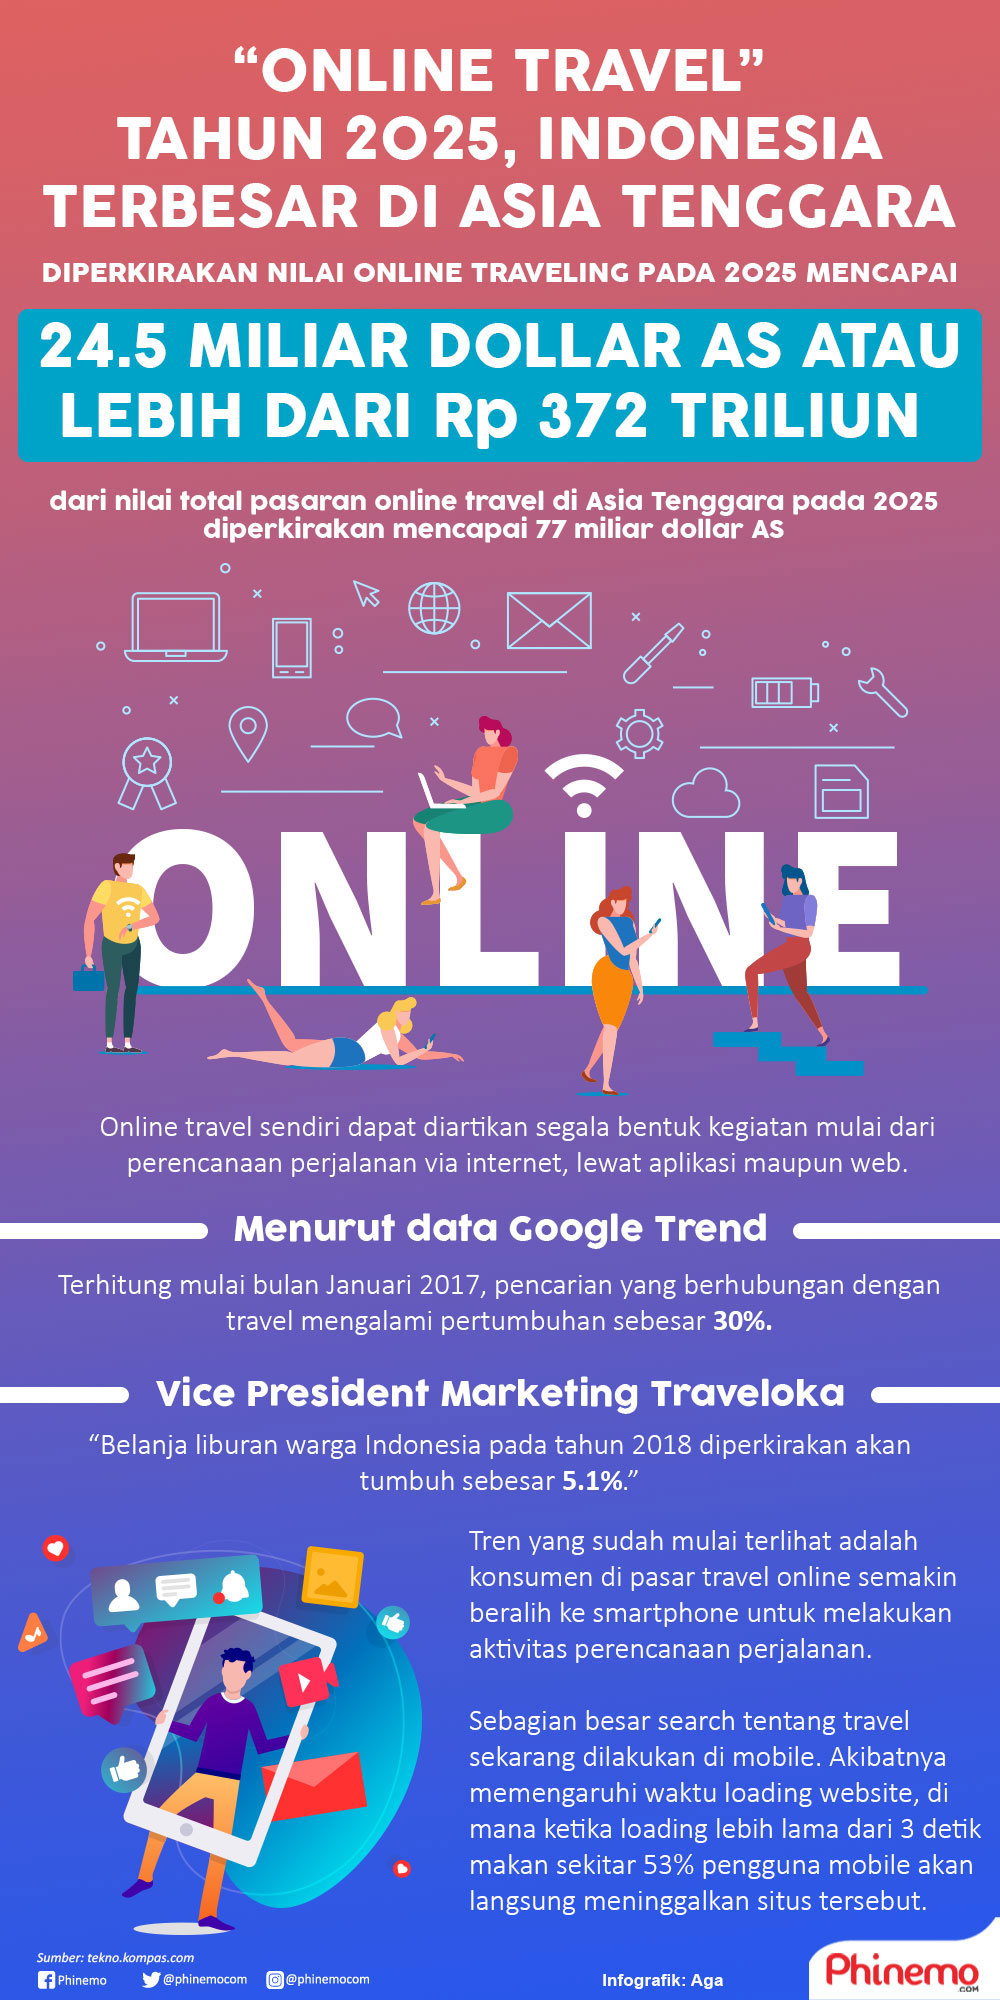 Infografik Semakin Bergairah Pasar "Online Travel" Indonesia Diperkirakan Menuju Puncak di Tahun 2025